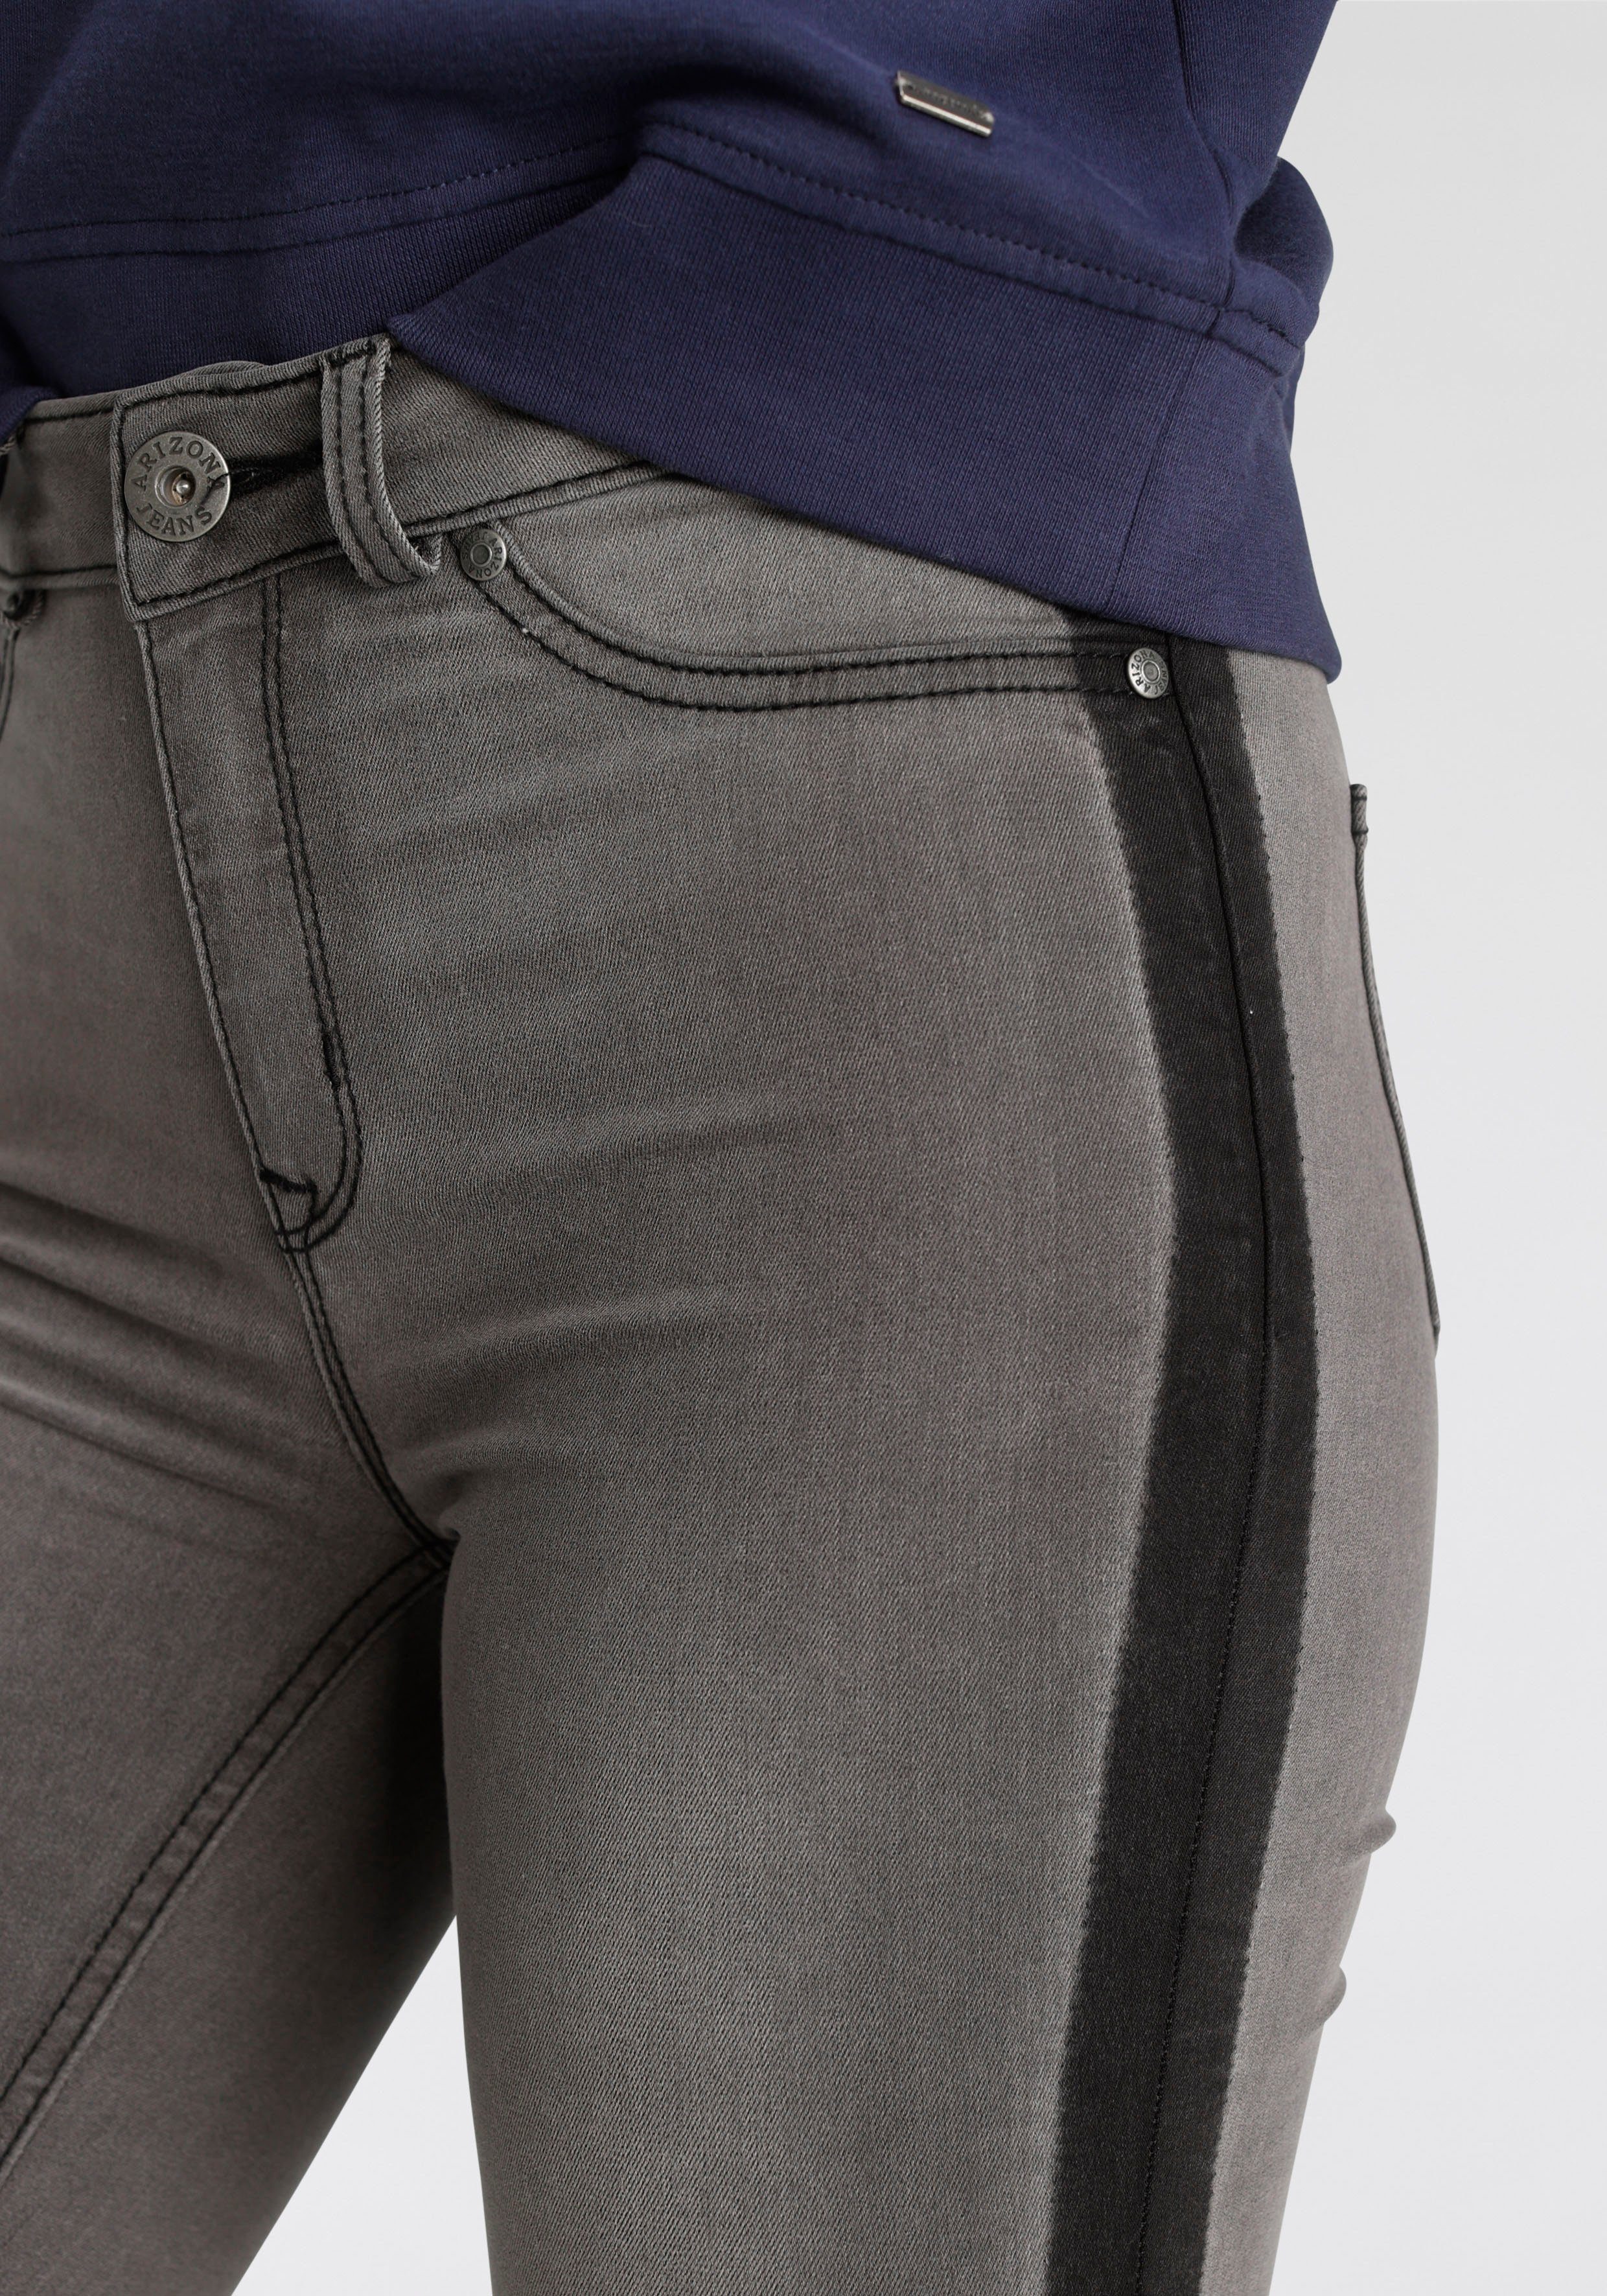 Arizona Skinny-fit-Jeans Ultra grey-used seitlichem Streifen High mit Waist Stretch